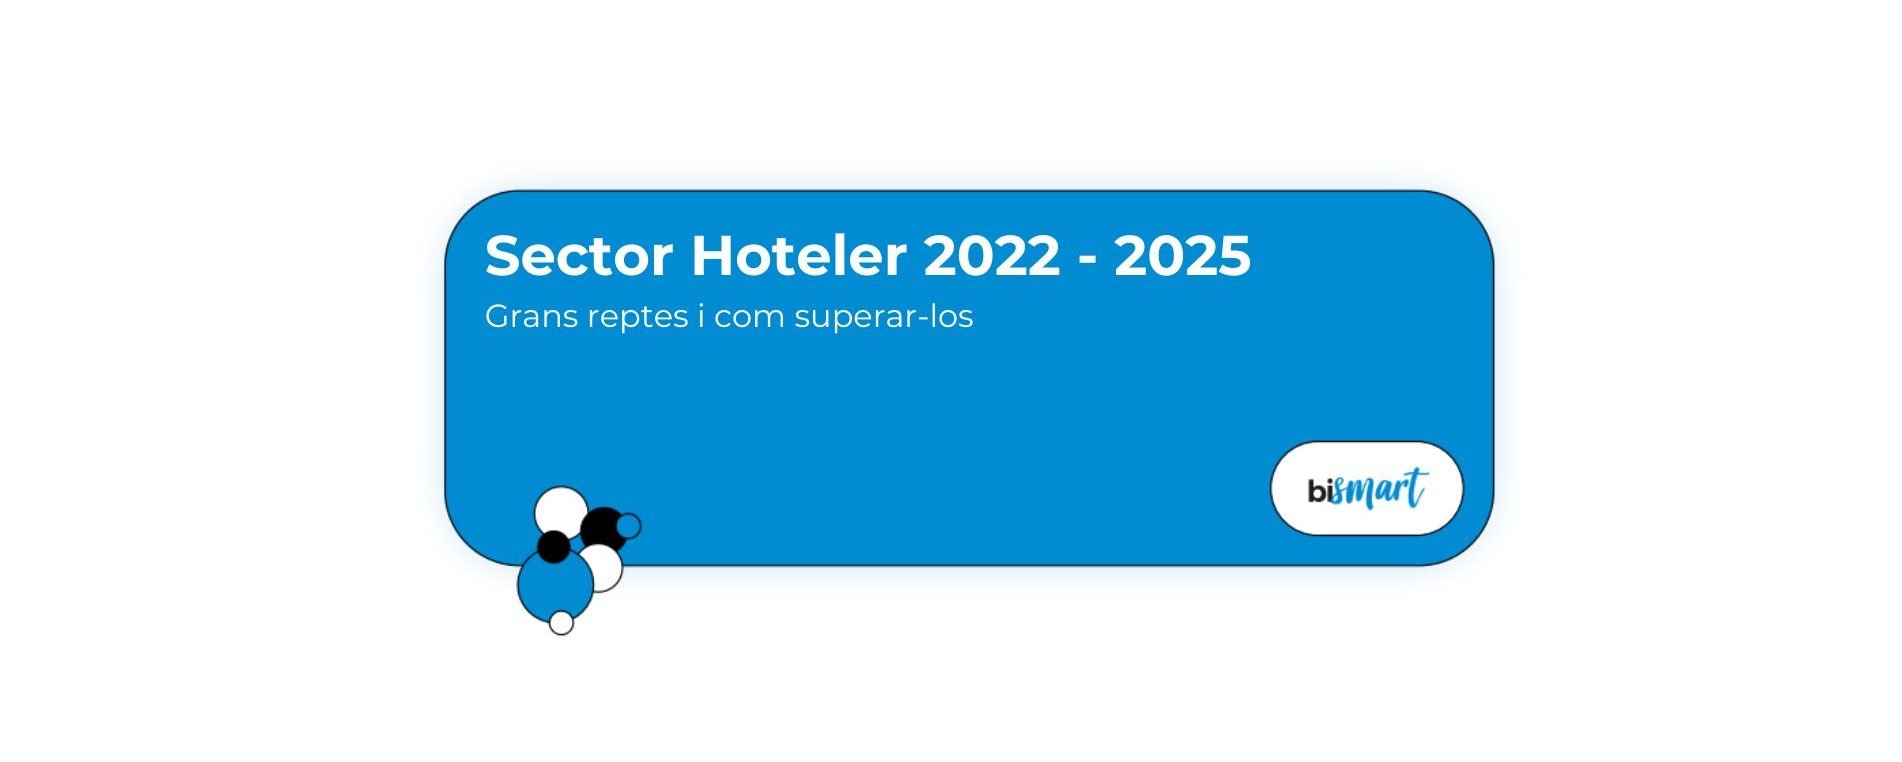 sector hoteler 2022 2025 grans reptes i com superar-los-1